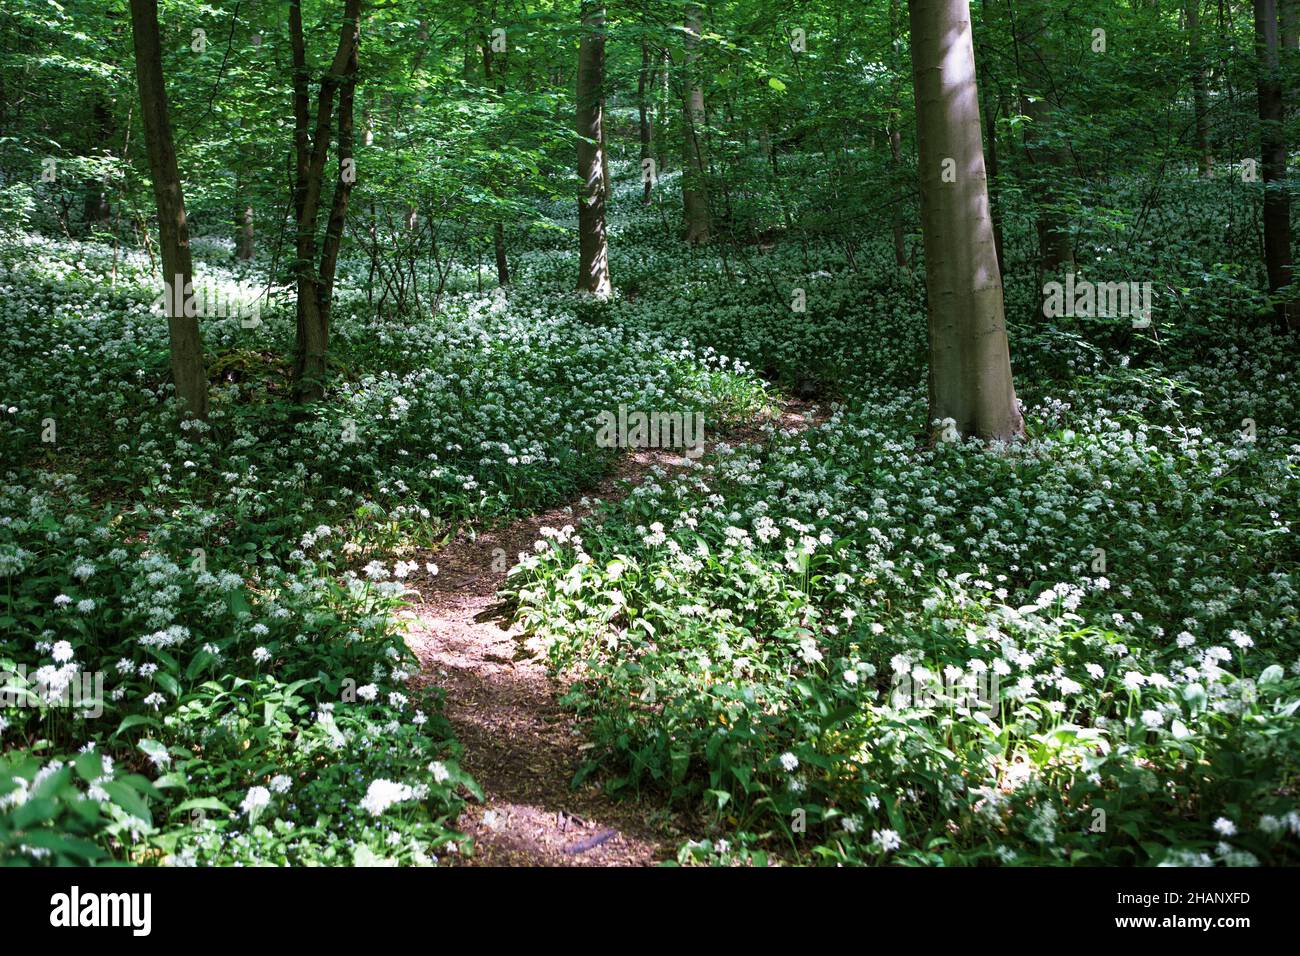 Allium ursinum ou ail sauvage couvre le fond de la forêt, Allemagne, Europe Banque D'Images